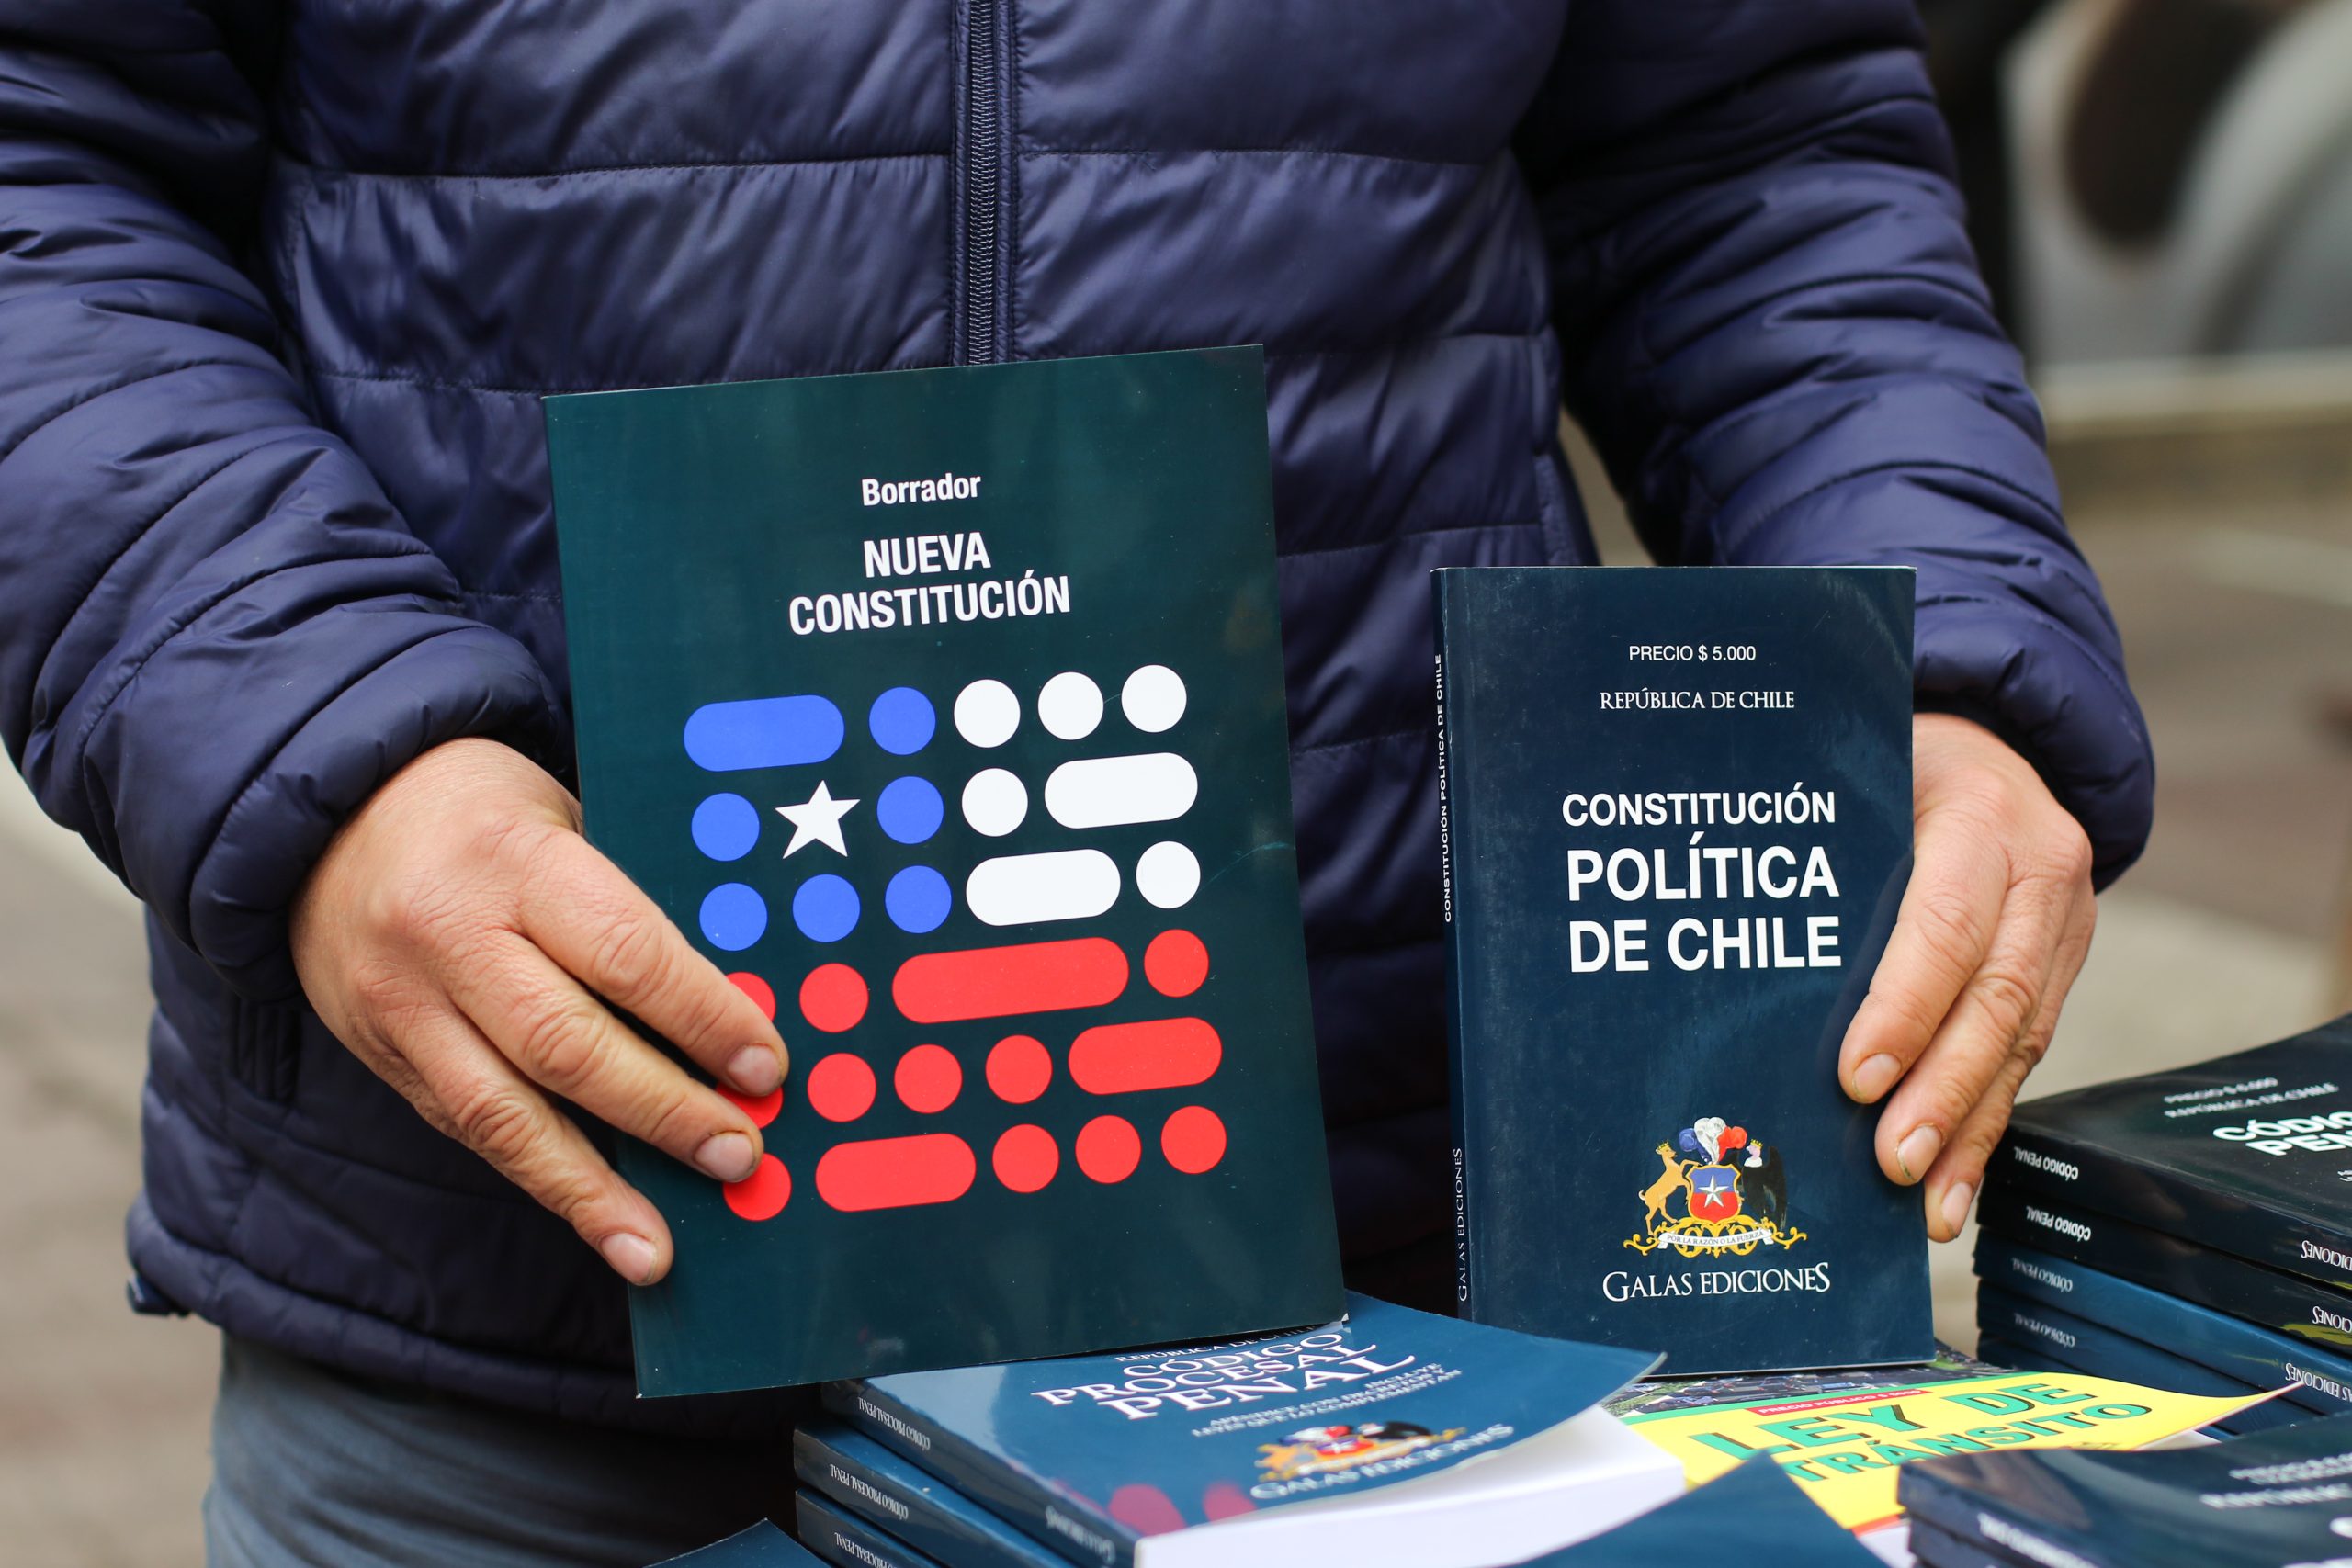 Economistas internacionales destacaron propuesta de Constitución chilena: «El mundo tiene mucho que aprender de los procesos ejemplares de la Convención y el visionario producto que se votará»